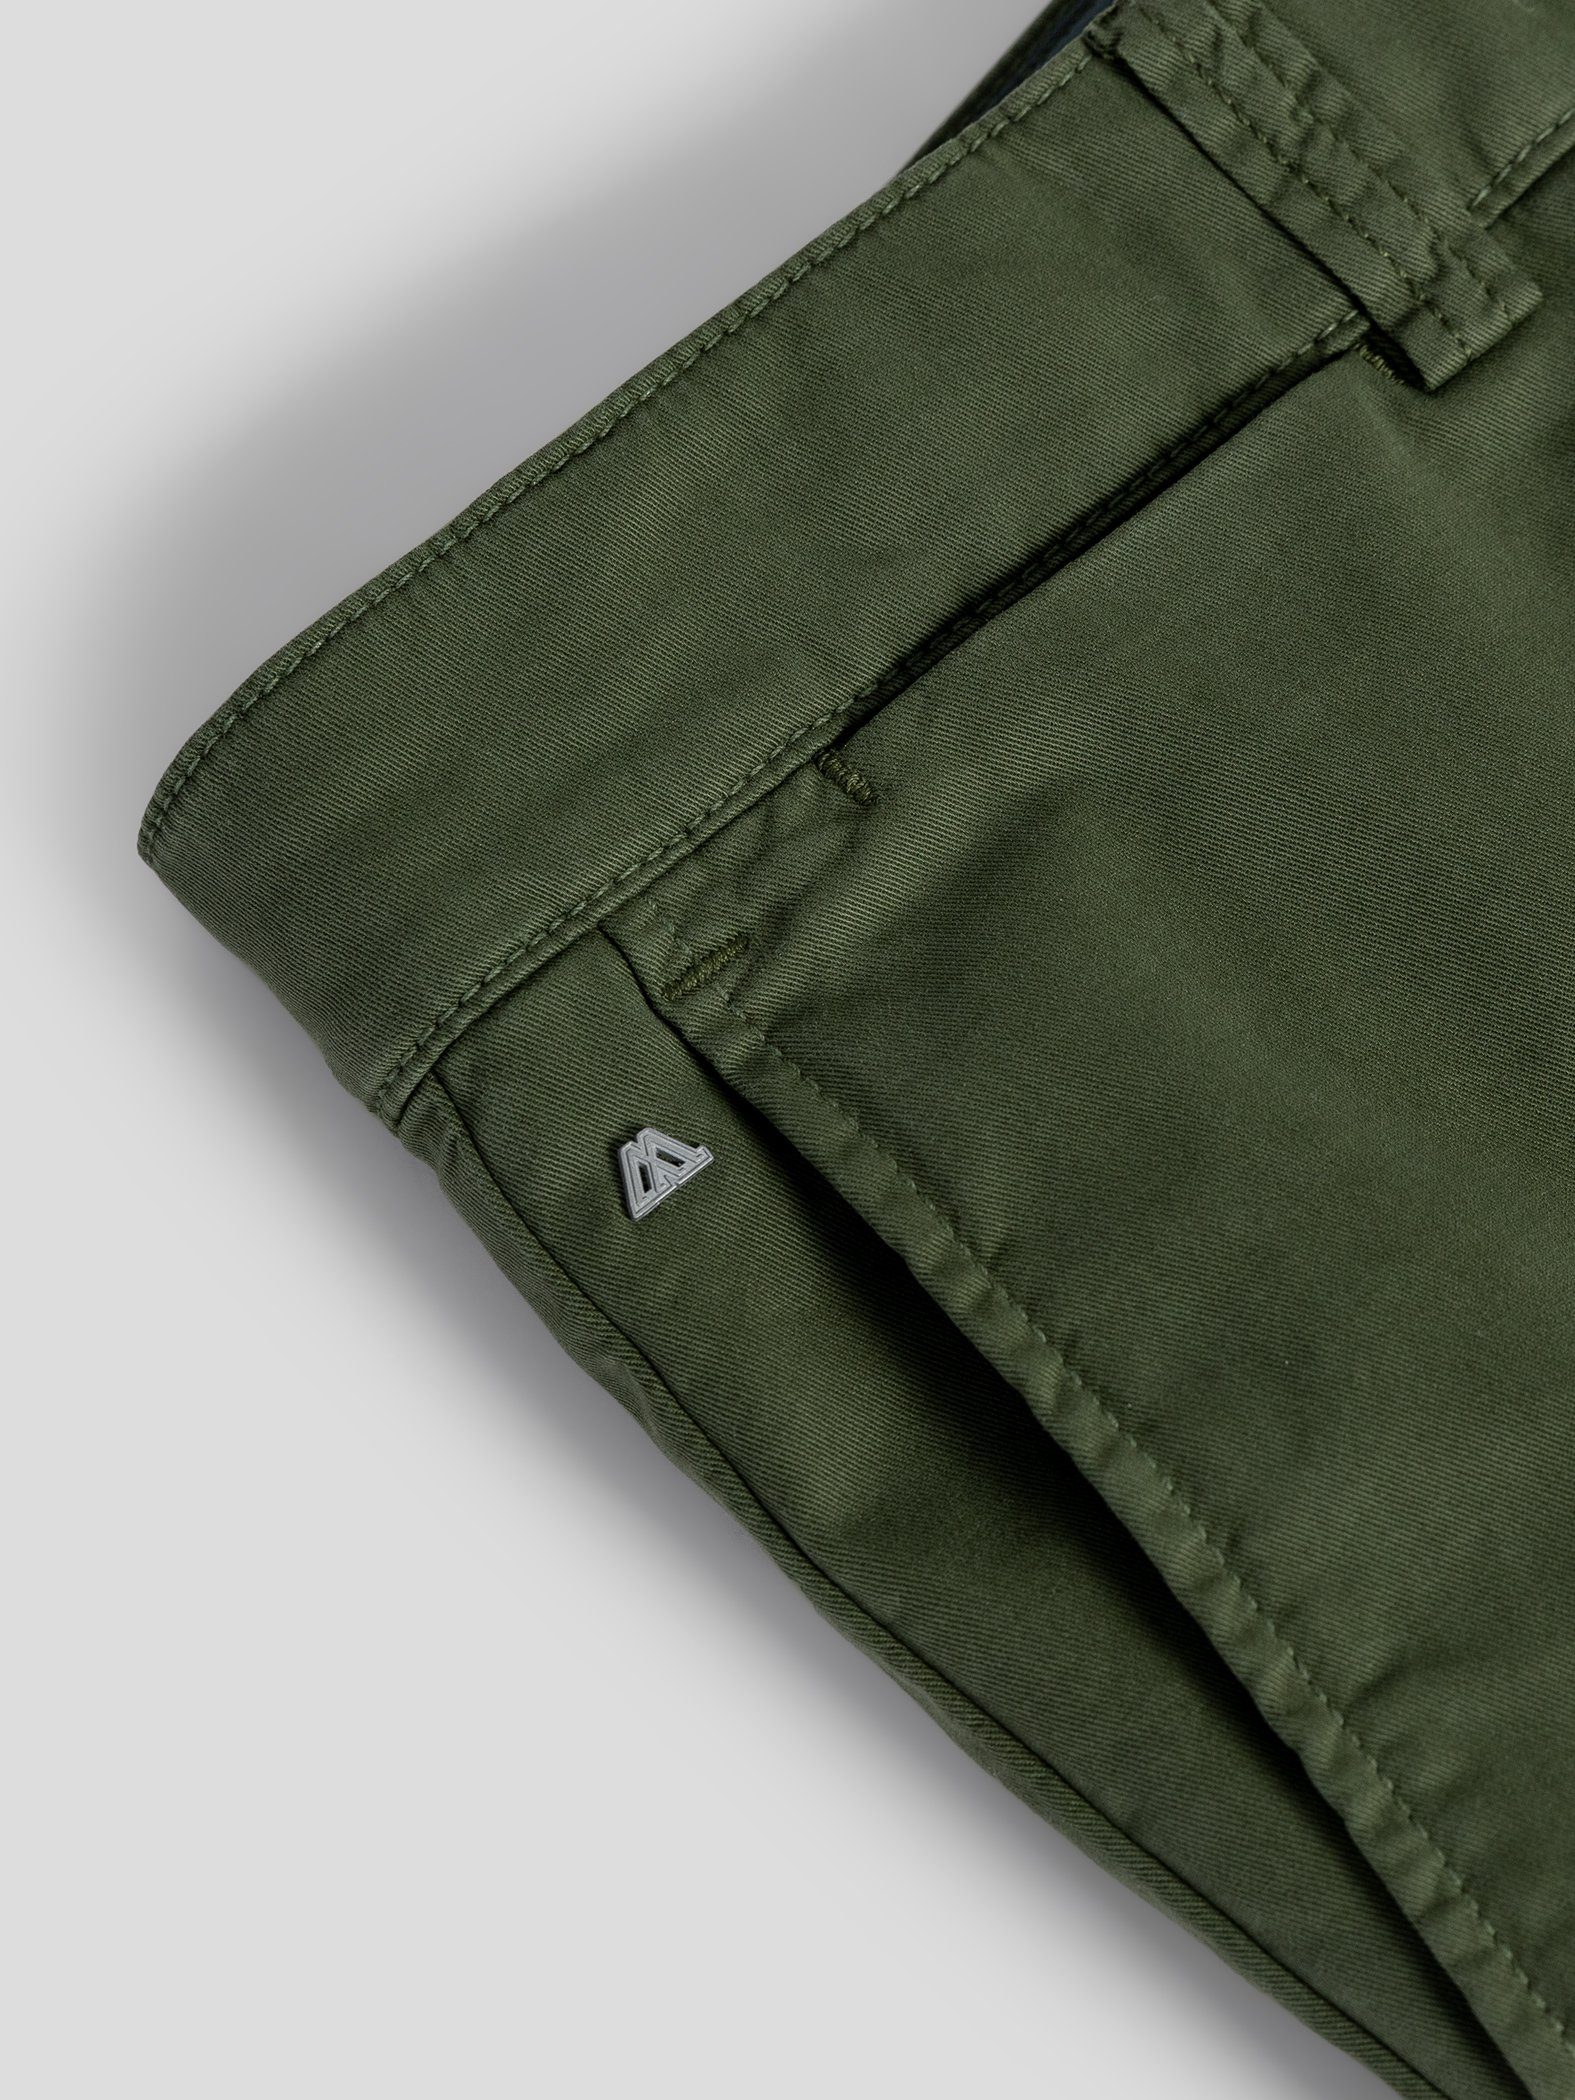 TwoMates Shorts Shorts mit elastischem GOTS-zertifiziert Bund, Grün Farbauswahl